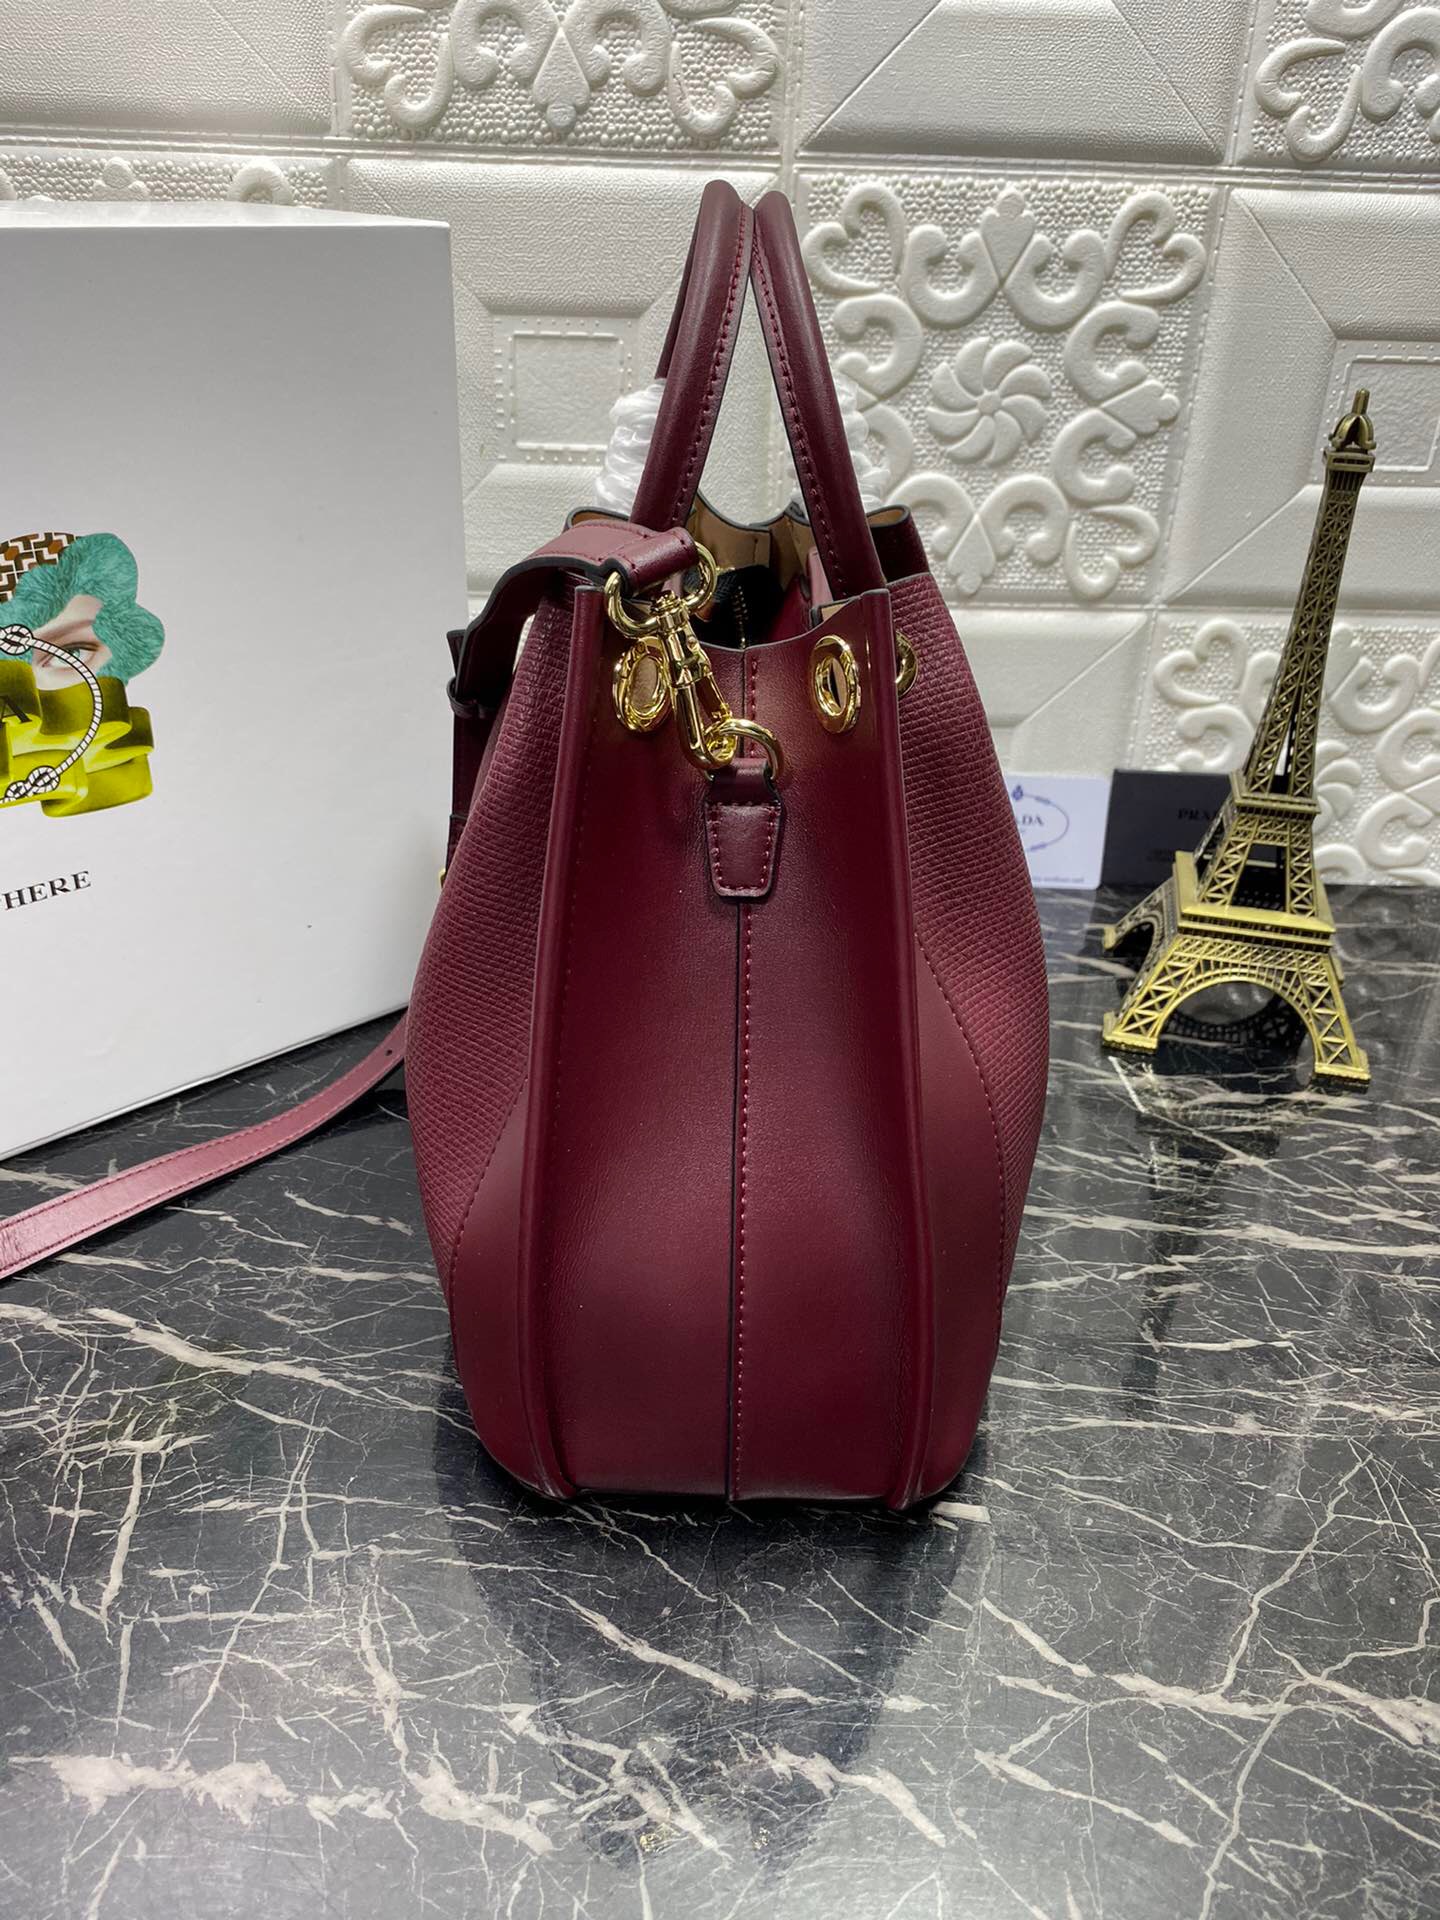 Cheap 2020 Cheap Prada Handbags For Women # 228188,$115 [FB228188 ...